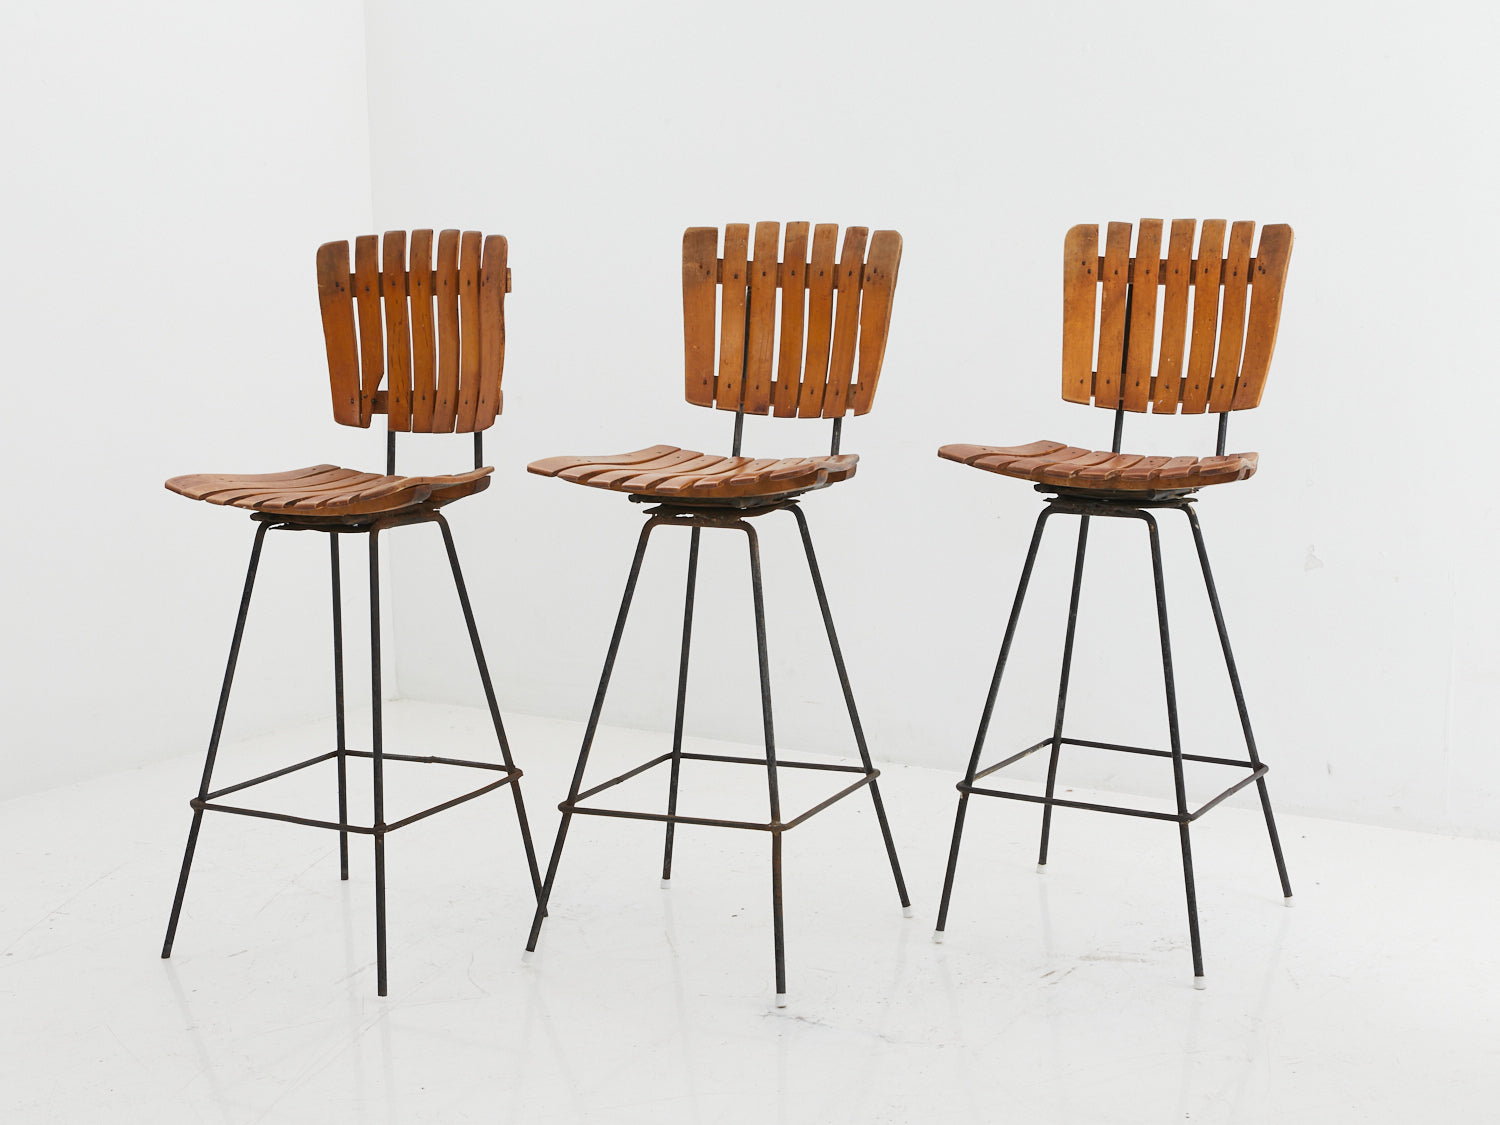 Set of 3 iron and wood stools by Arthur Umanoff